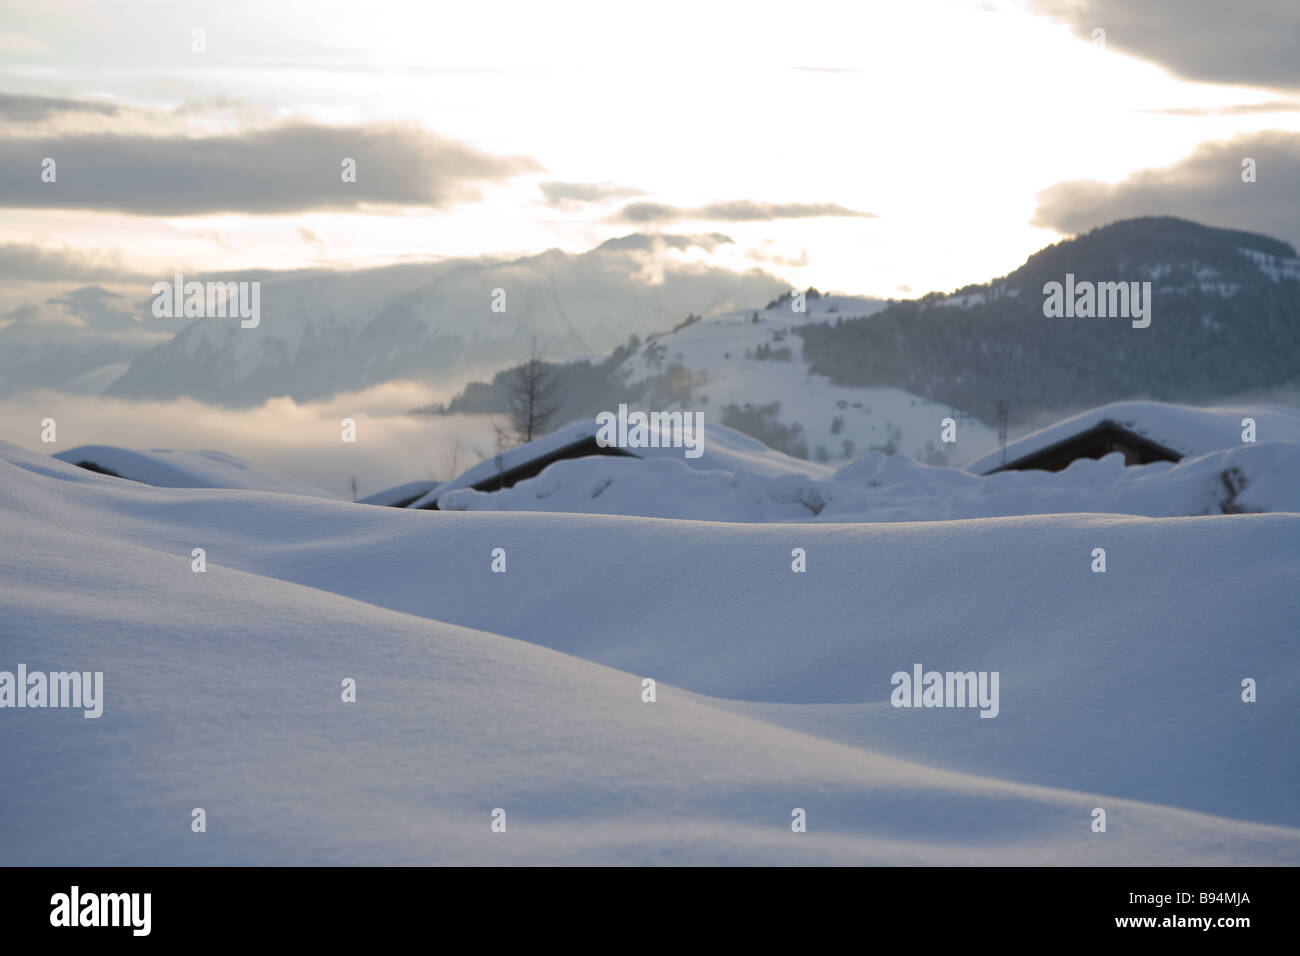 Un banco de nieve o se desvía en primer plano los techos cubiertos de nieve y montañas de fondo con la puesta de sol y nubes en el cielo Foto de stock